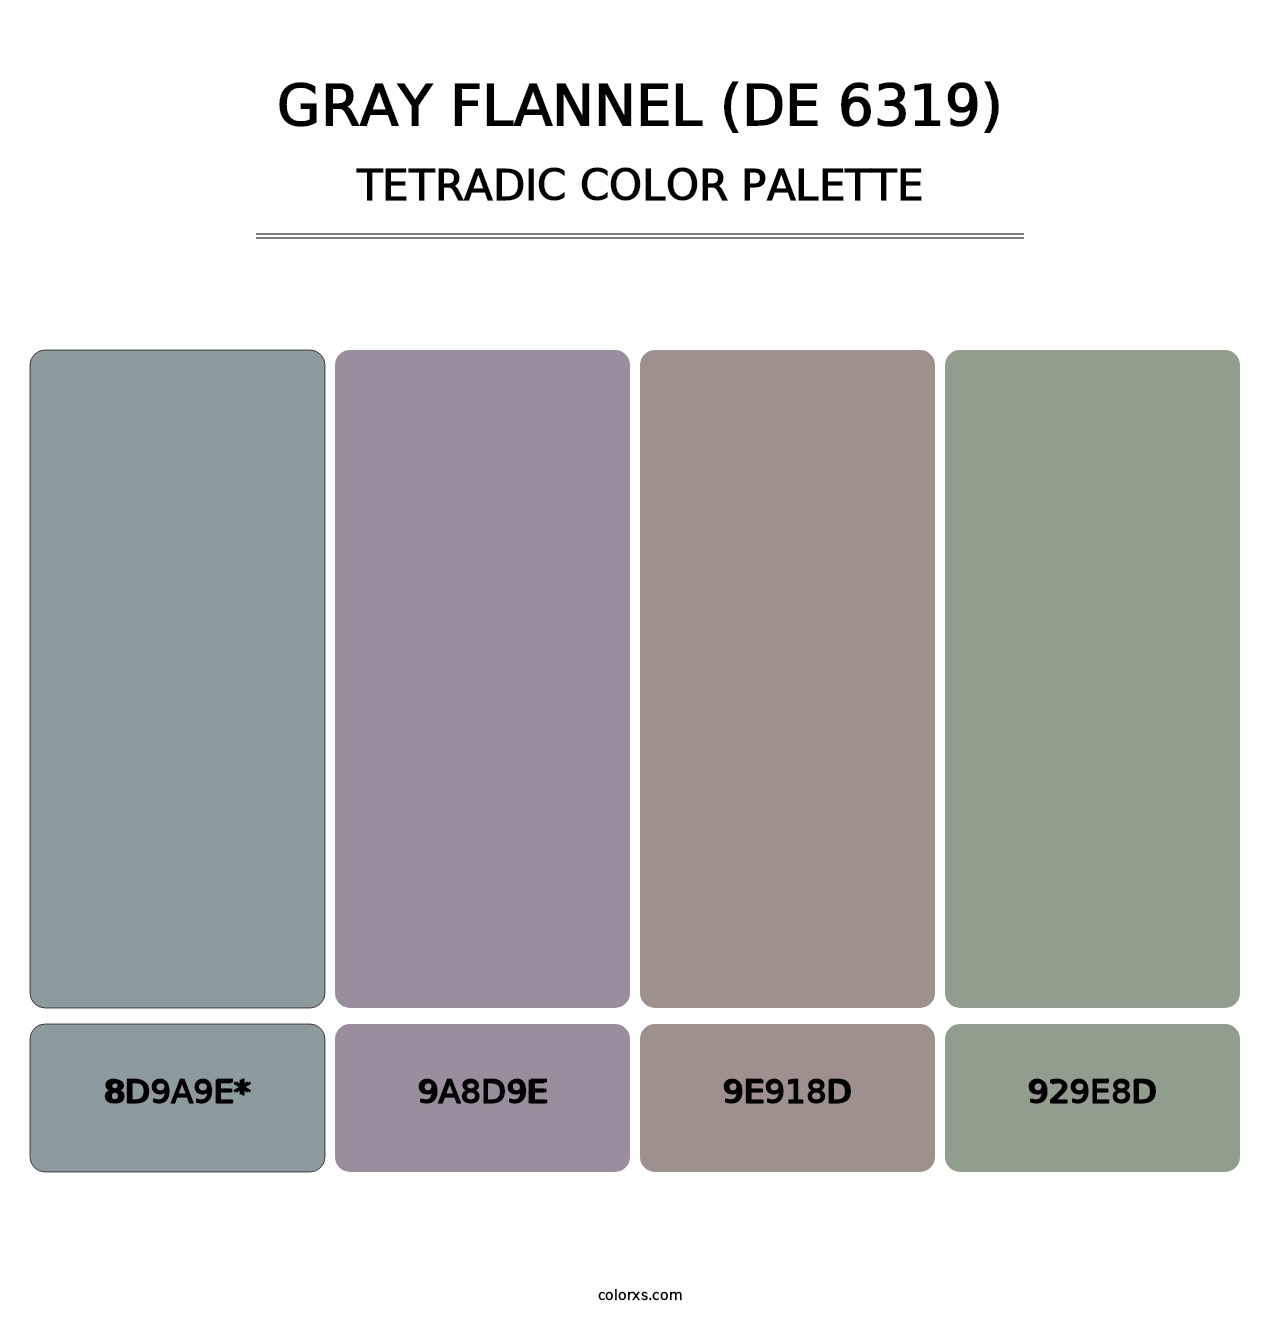 Gray Flannel (DE 6319) - Tetradic Color Palette